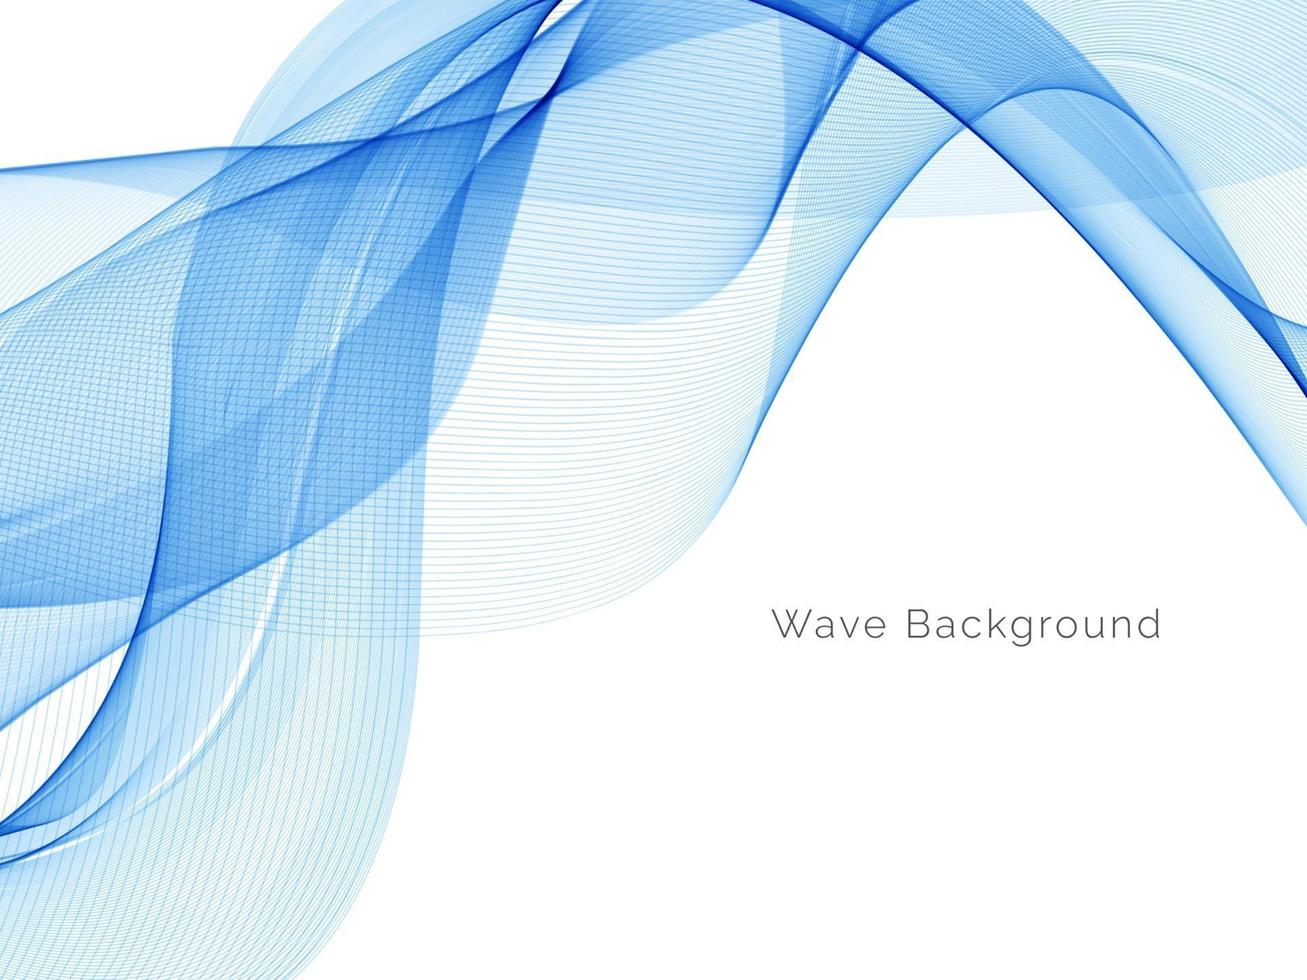 dekorativer Hintergrund des abstrakten blauen Wellenentwurfs vektor